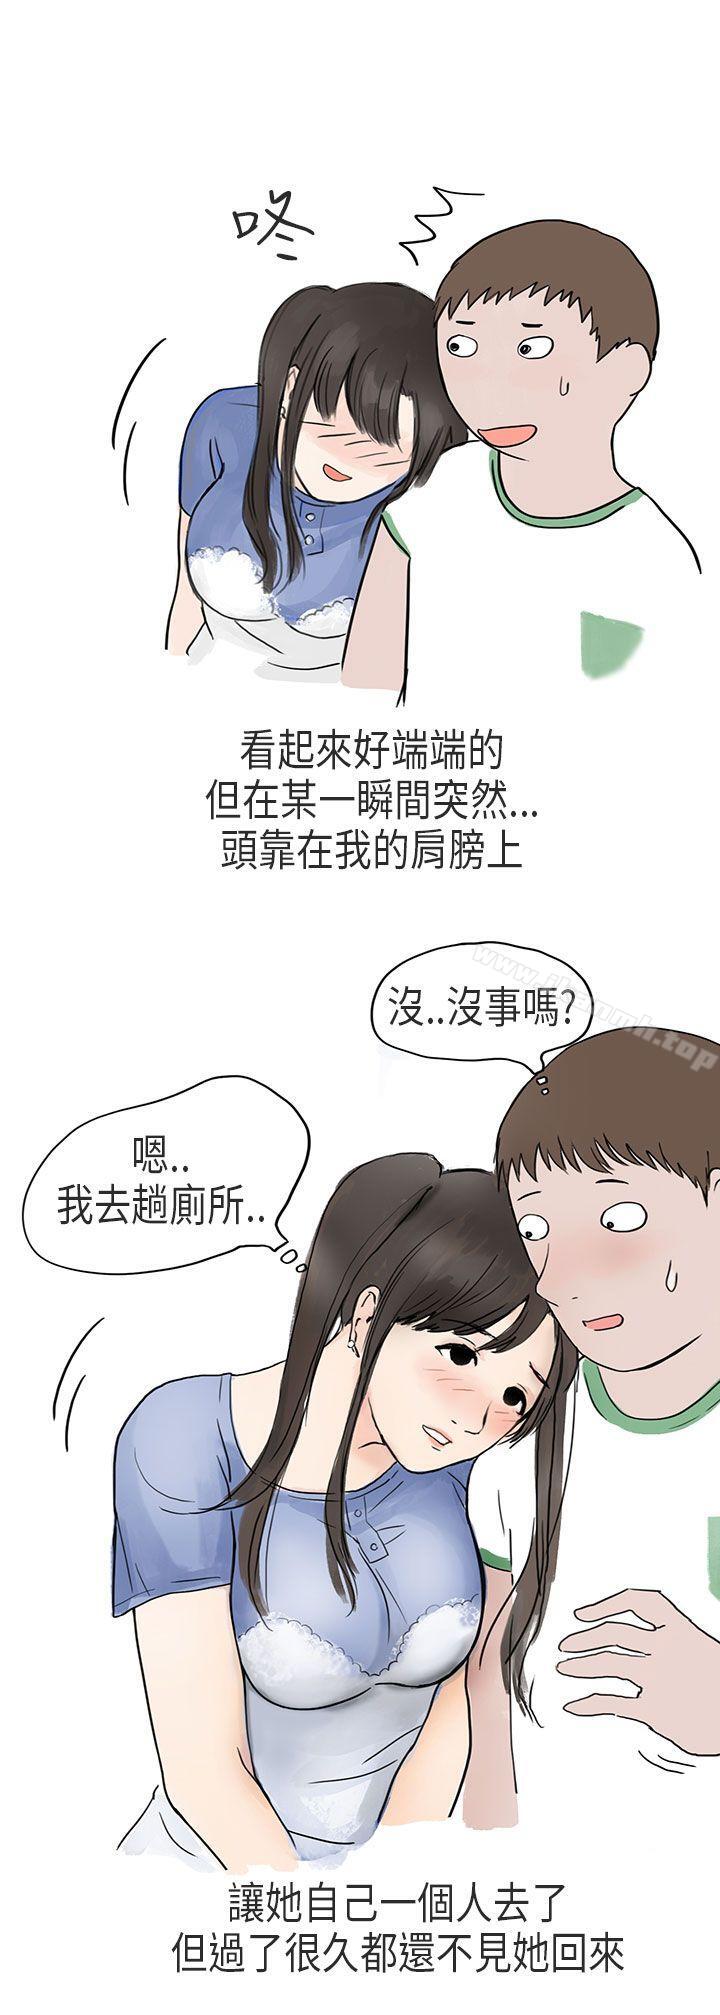 漫画韩国 秘密Story第二季   - 立即阅读 第二季 在Cosplay同好會中(下)第2漫画图片